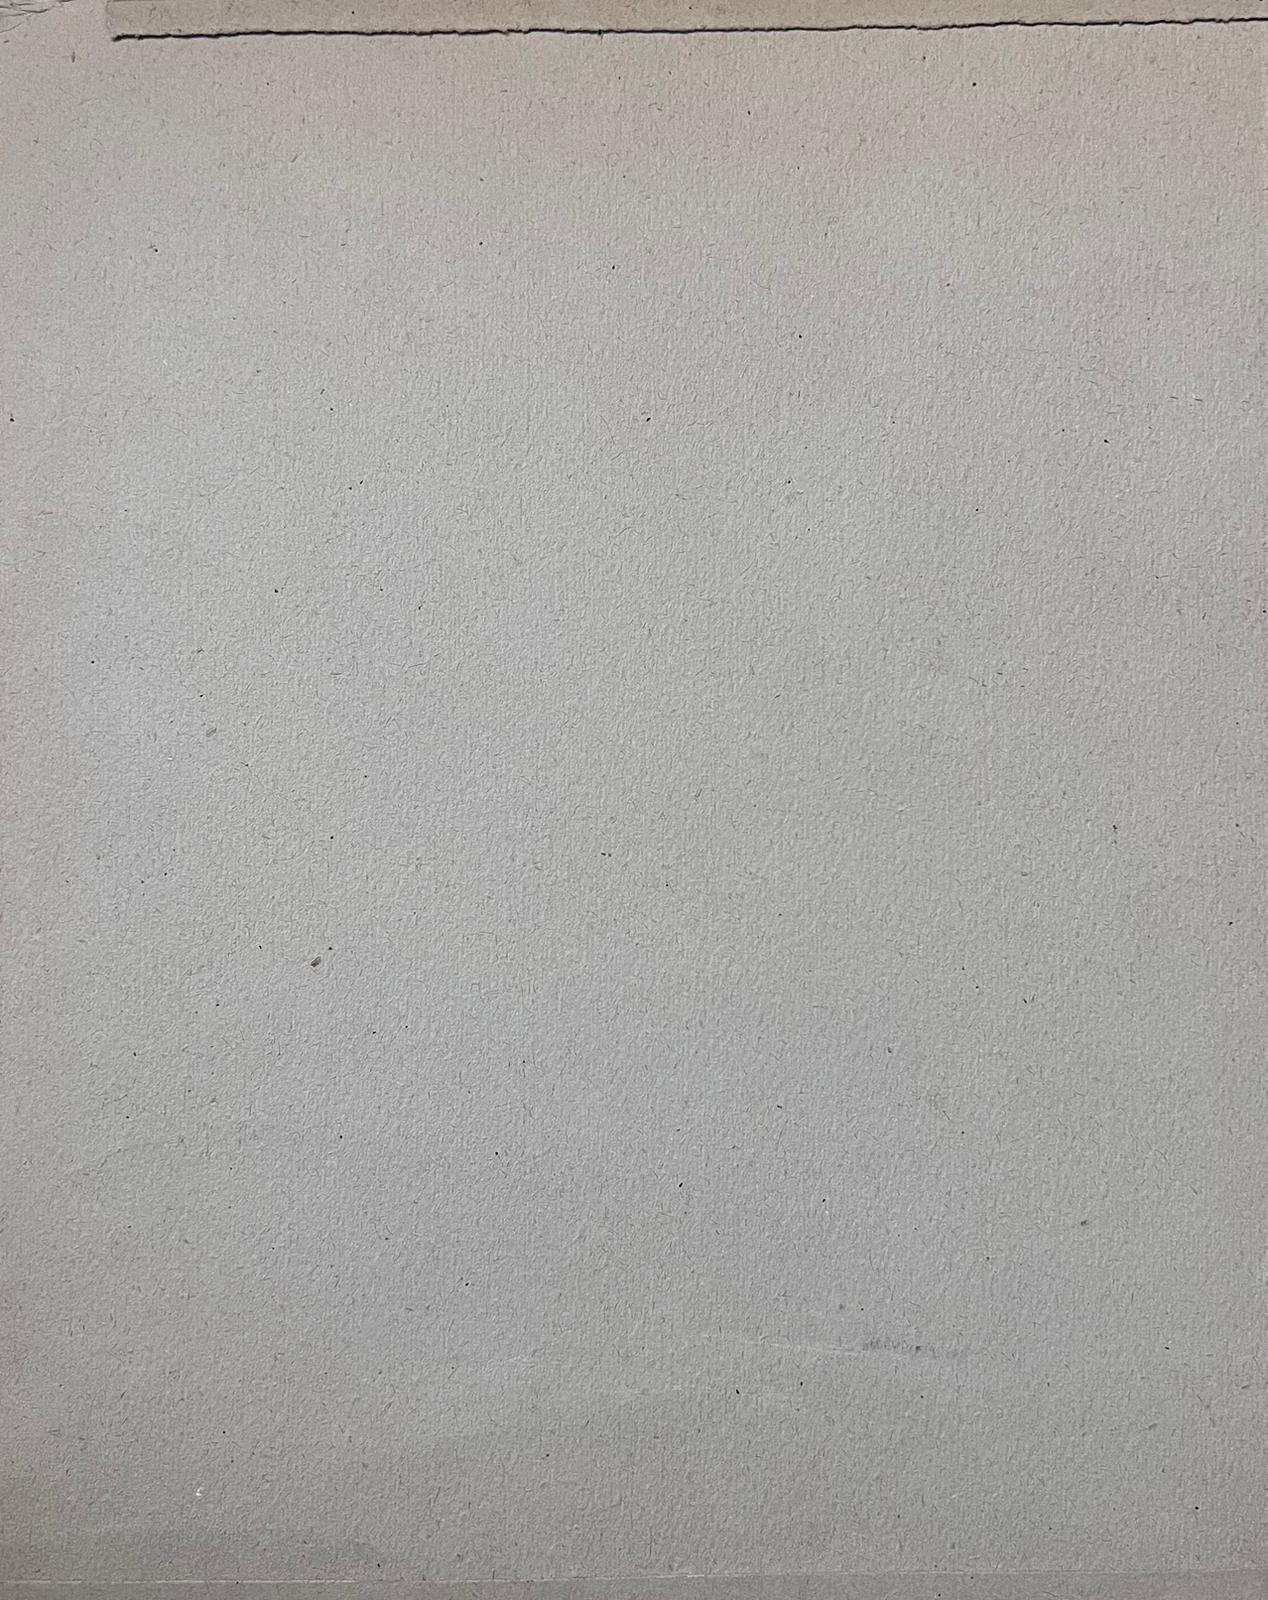 Jean La Forgue (Französisch 1901-1975) Gouache auf Papier, ungerahmt
Gemälde: 14,5 x 11 Zoll
Herkunft: Nachlass des Künstlers, Frankreich
Zustand: sehr guter und gesunder Zustand; es gibt kleinere altersbedingte Spuren und Flecken auf der